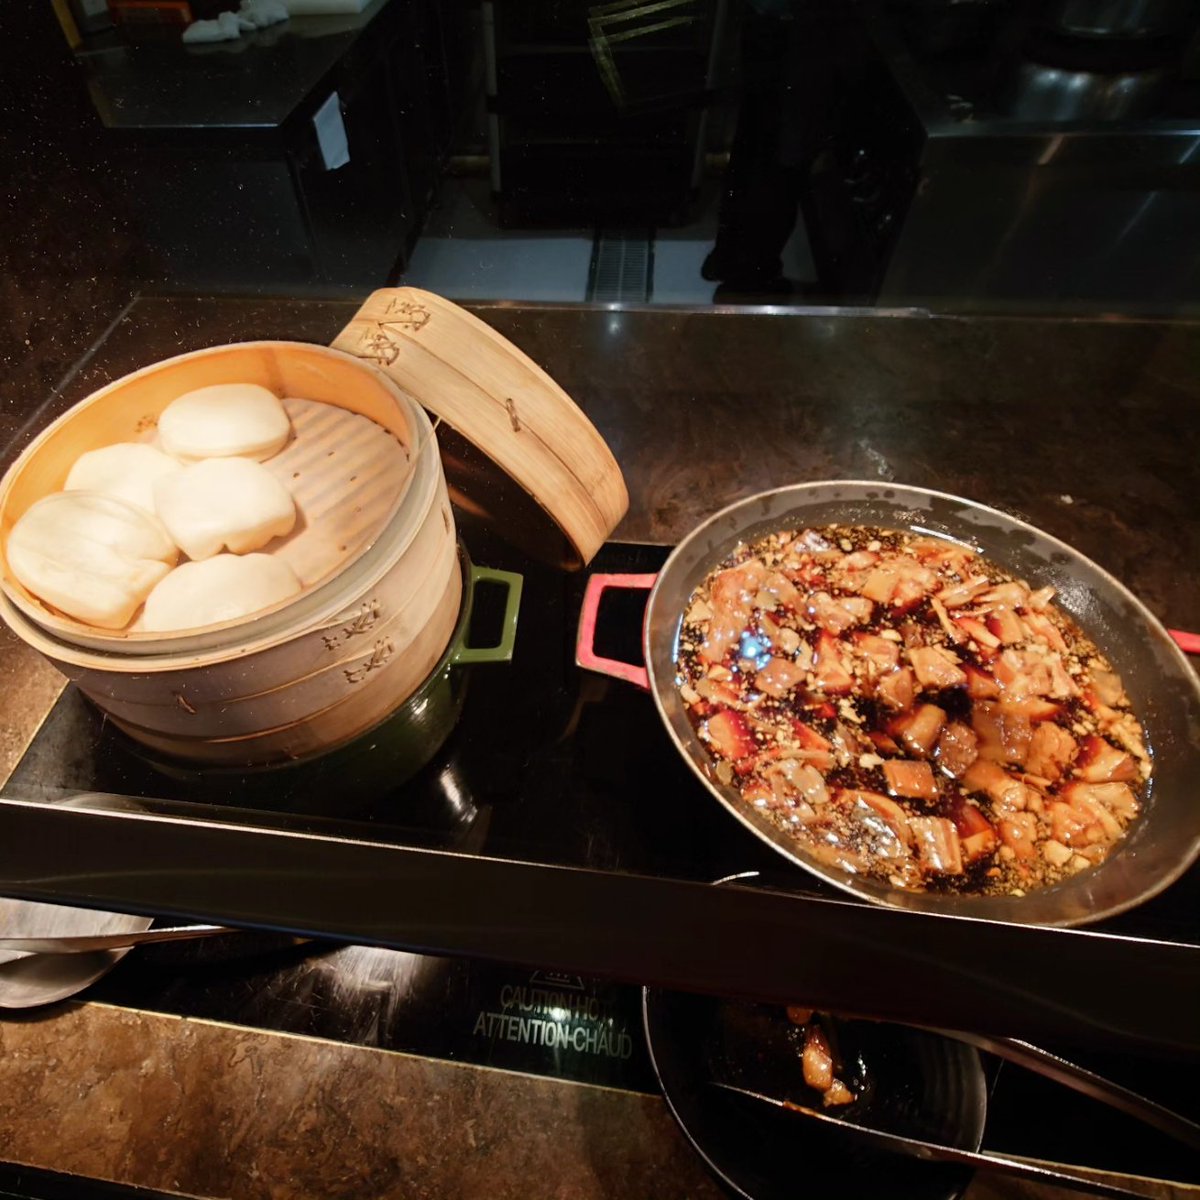 ヒルトン台北新板、朝食は2階Market Flavor.
広くてメニューラインナップは沢山有り！
台湾式麺、鹹豆漿(豆乳スープ)、刈包(台湾バーガー)とローカル料理満載で気分がアゲアゲです。
刈包が超絶美味でございます〜！！😃🤤🤗👍
#芸術的朝食
#ArtisticBreakfast
#爆食
#増量期
#台湾旅行
#台湾一人旅